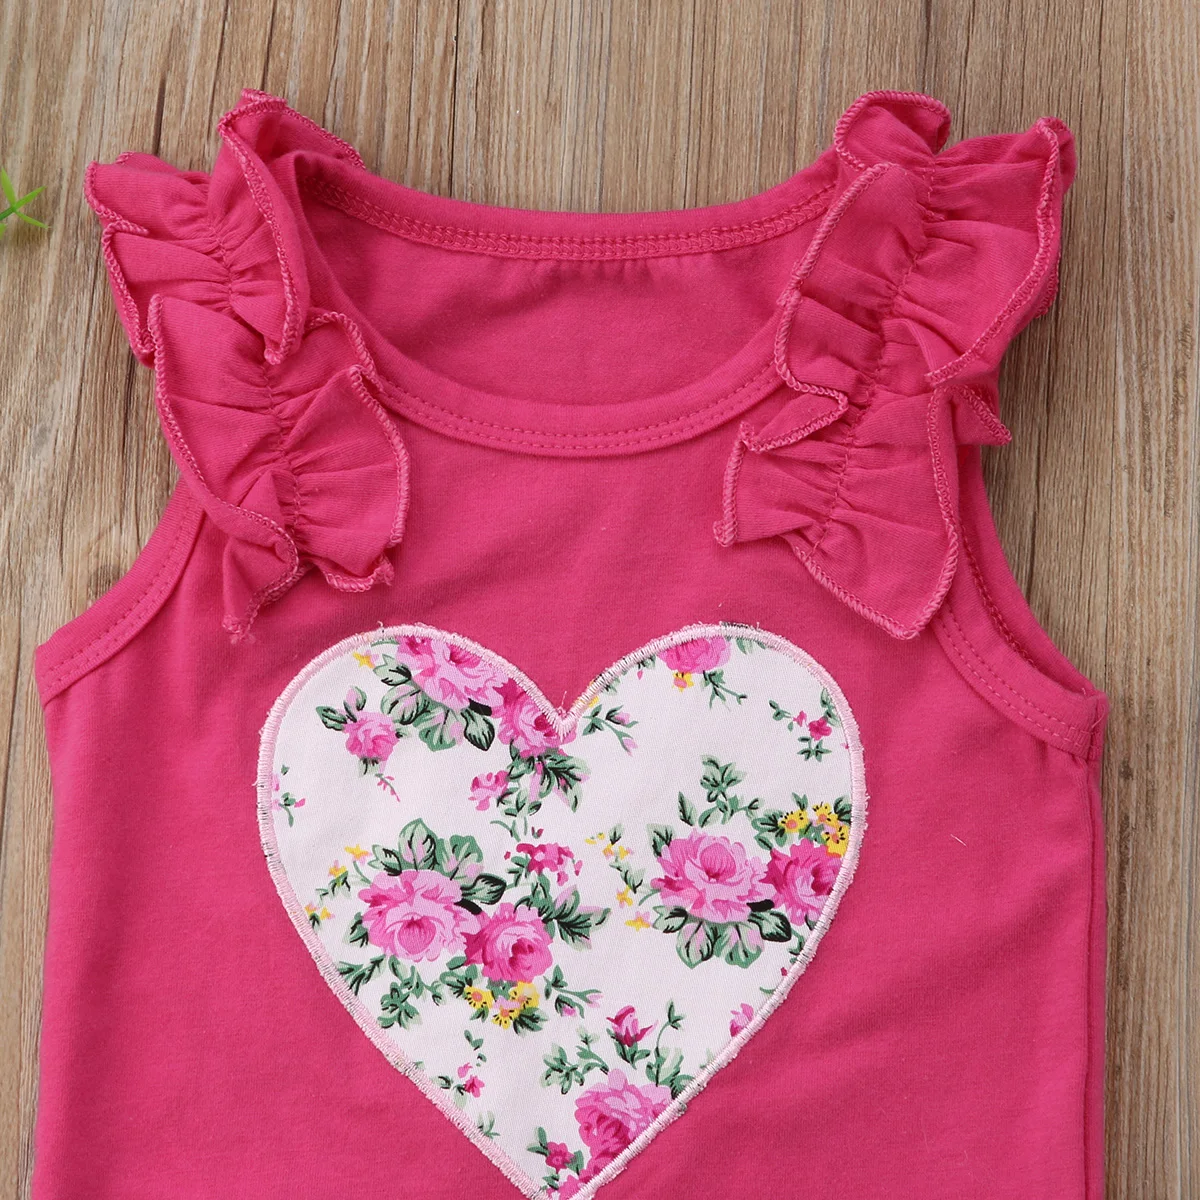 Одежда для маленьких девочек из 2 предметов, летняя футболка с цветочным принтом+ короткая юбка, хлопковый повседневный комплект одежды для девочек